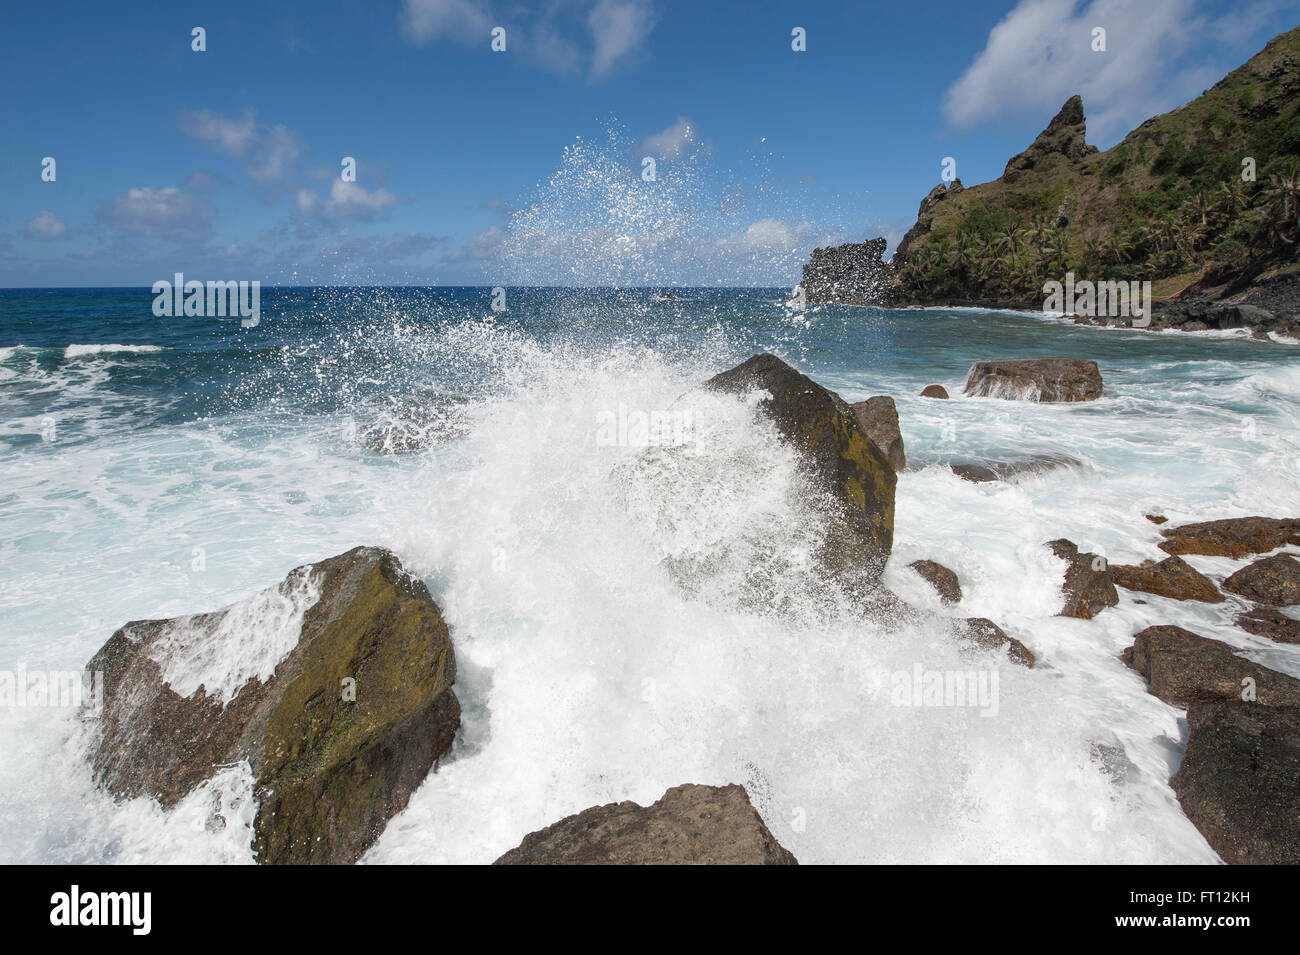 Oceano Pacifico onde che si infrangono sulle rocce, Pitcairn, Pitcairn gruppo di isole, British territorio di oltremare, Sud Pacifico Foto Stock